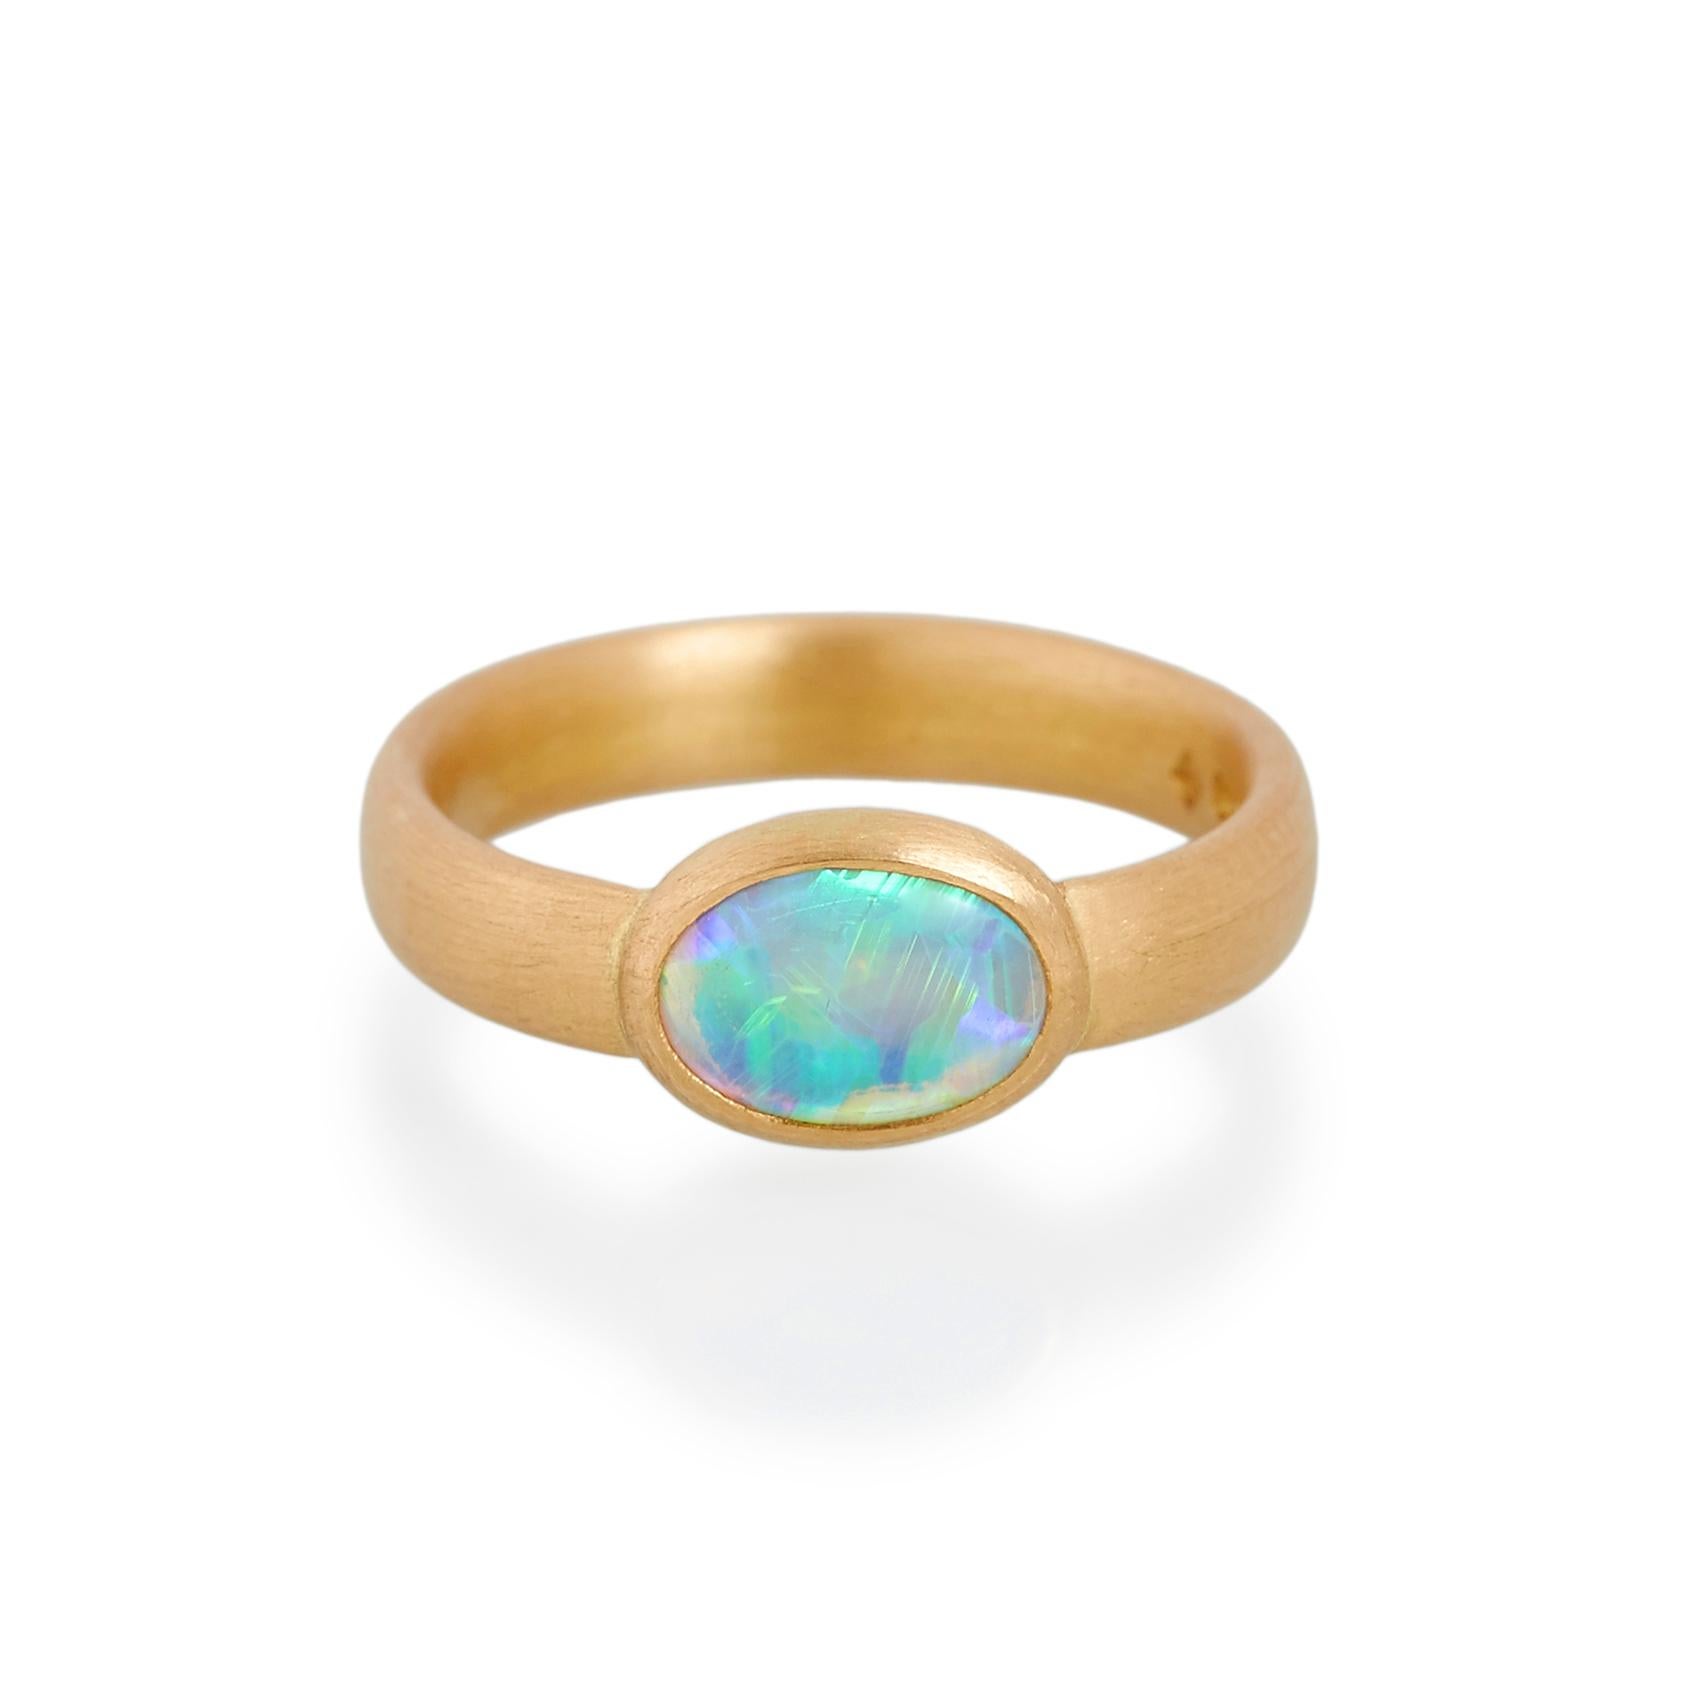 Ring mit Cabochon-Opal.
Ref: G15007

9mm x 6mm natürlicher Opal  
22 Karat Gold

Cadby & Co ist ein Familienunternehmen, das sich auf die Wiederverwendung und das Upcycling von alten geschliffenen Diamanten und Edelsteinen spezialisiert hat. Deborah